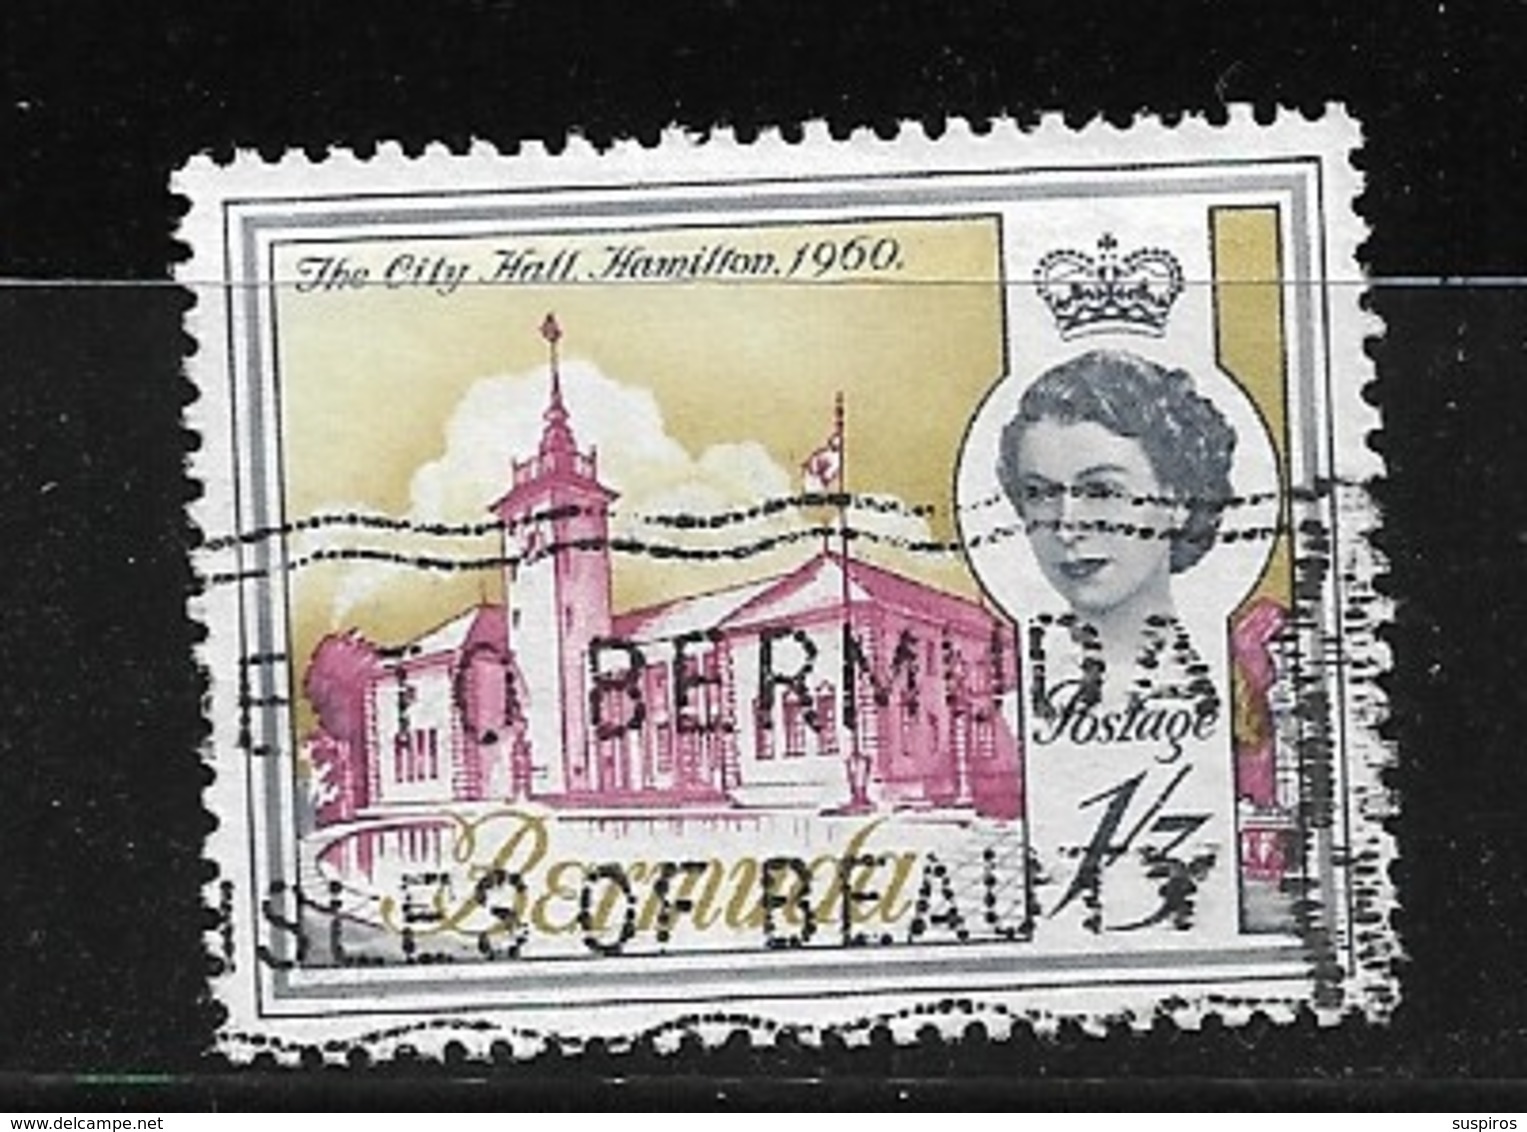 BERMUDA    1962 Definitive Issue  QUEEN ELIZABETH II 	 	Used The City Hall Hamilton 1960  NICE CANCEL - Bermuda